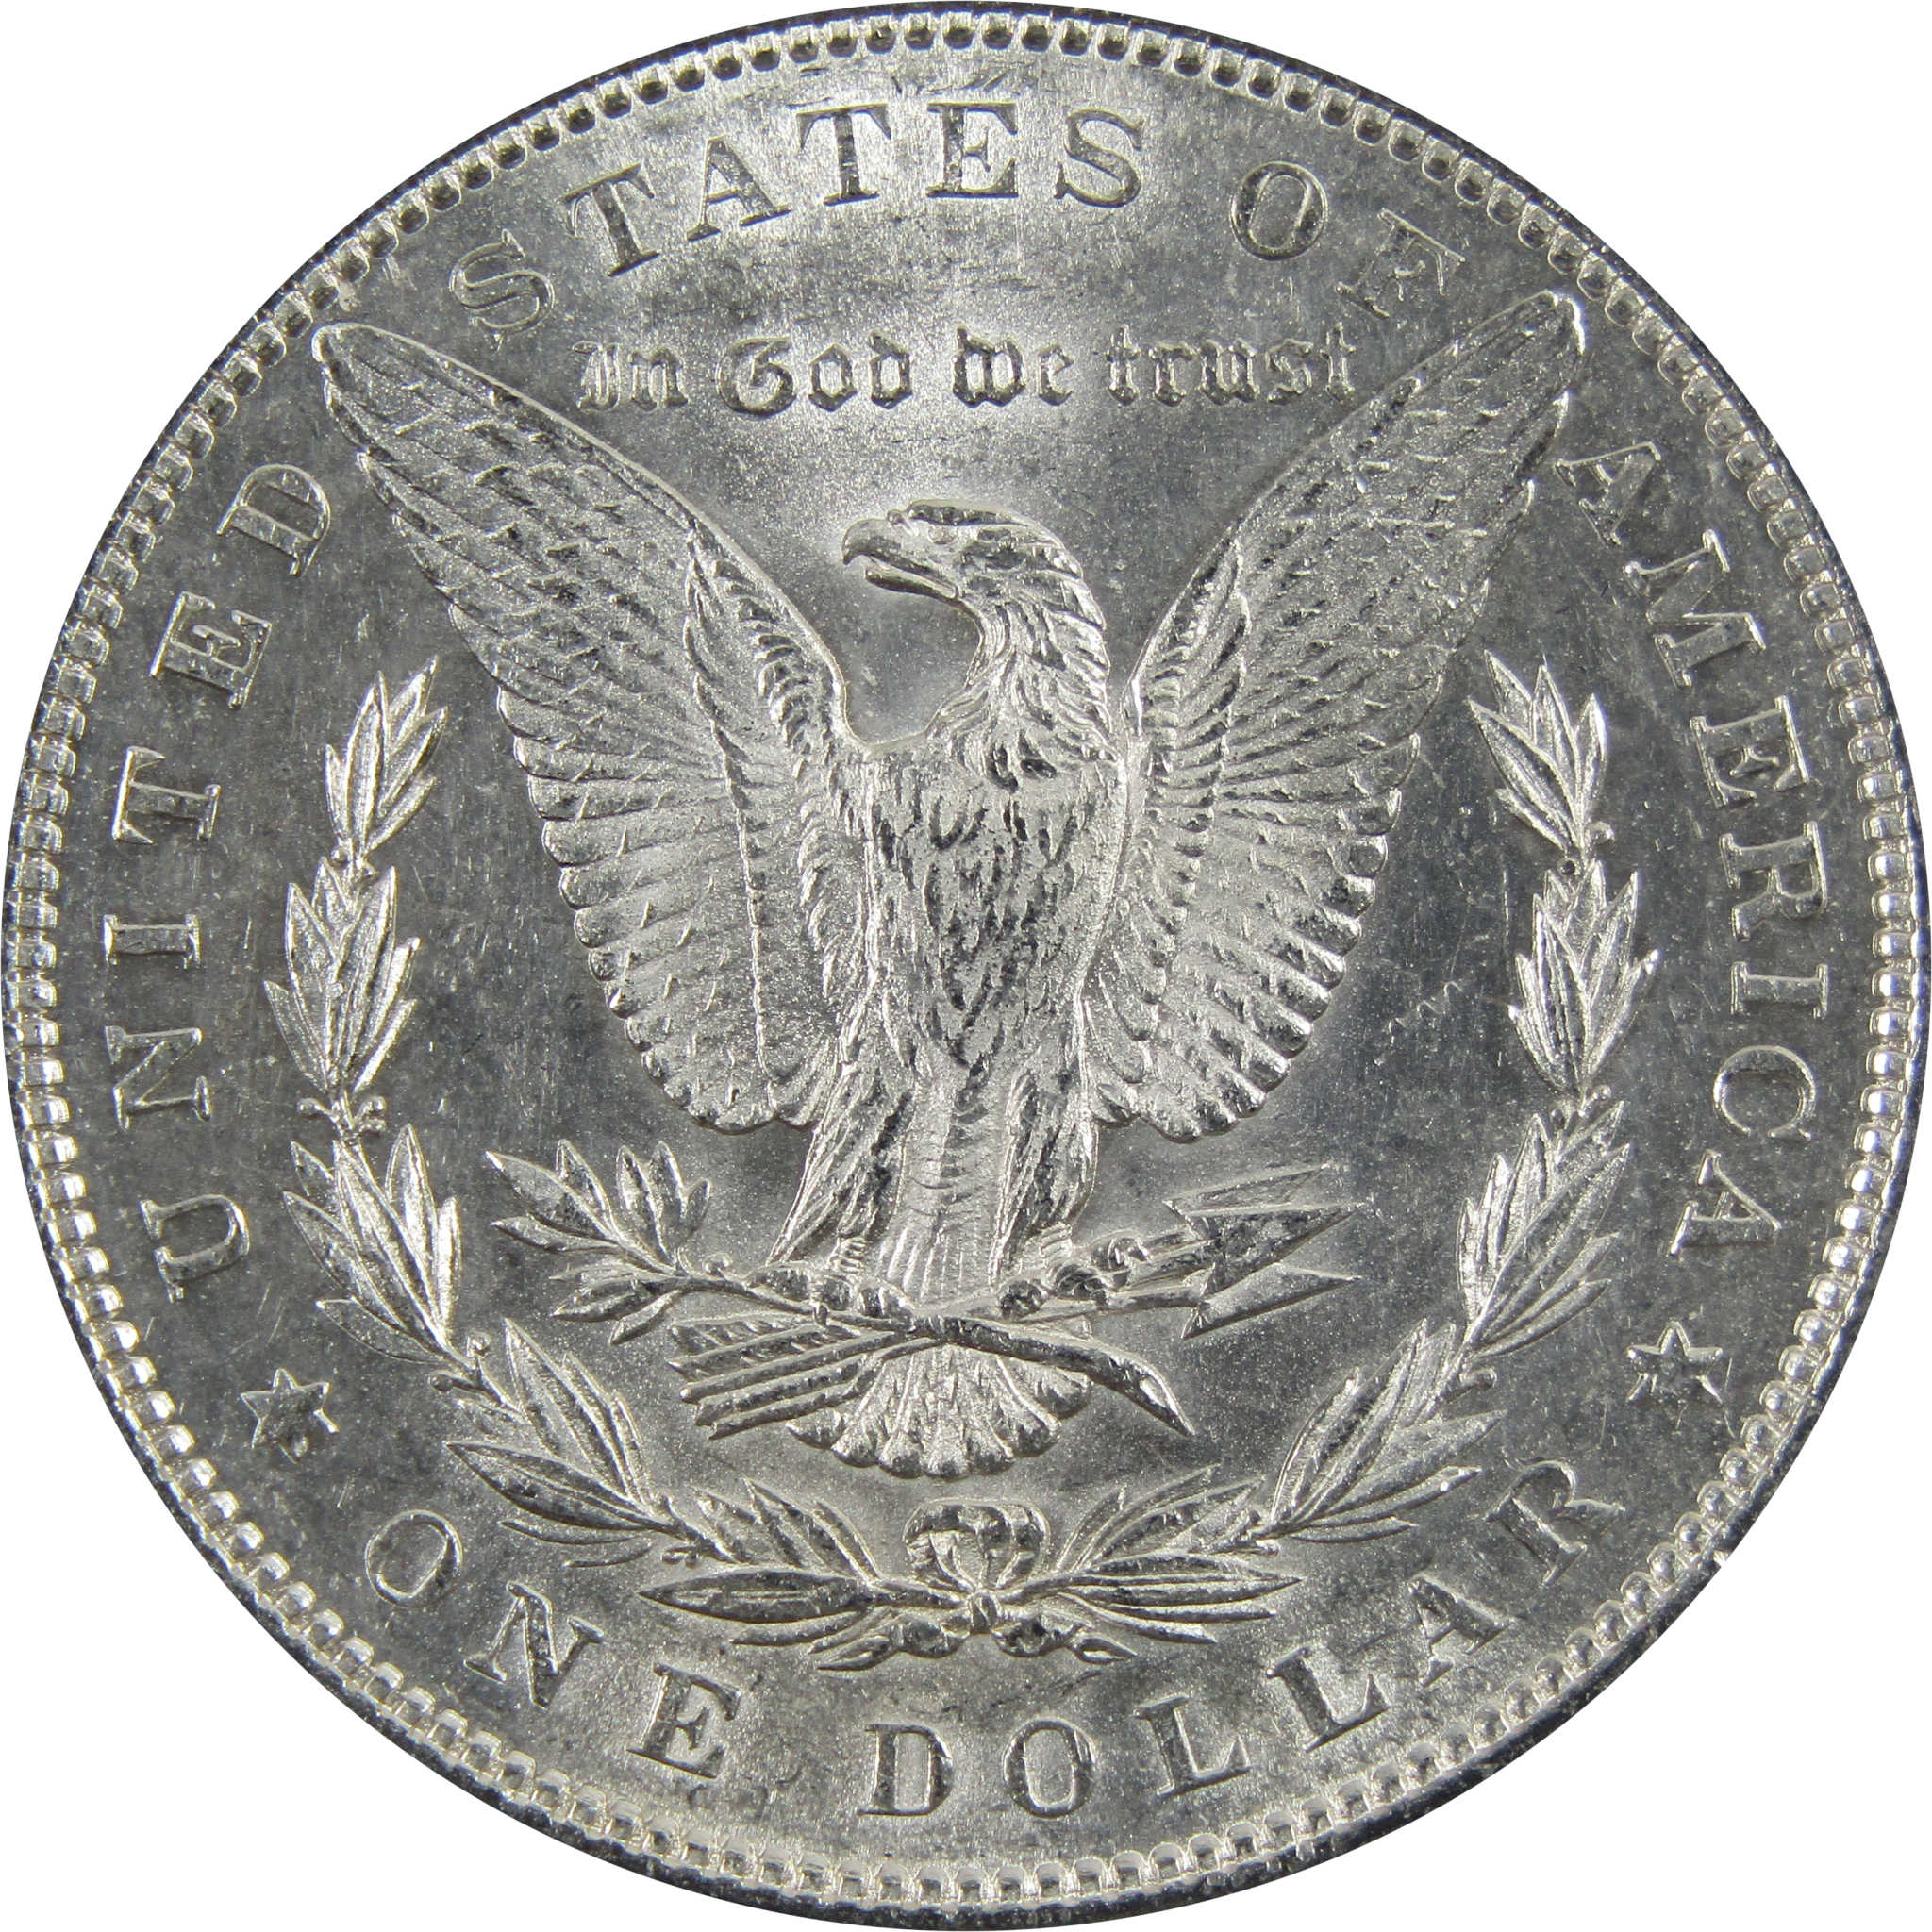 1883 Morgan Dollar BU Uncirculated 90% Silver $1 Coin SKU:I5166 - Morgan coin - Morgan silver dollar - Morgan silver dollar for sale - Profile Coins &amp; Collectibles